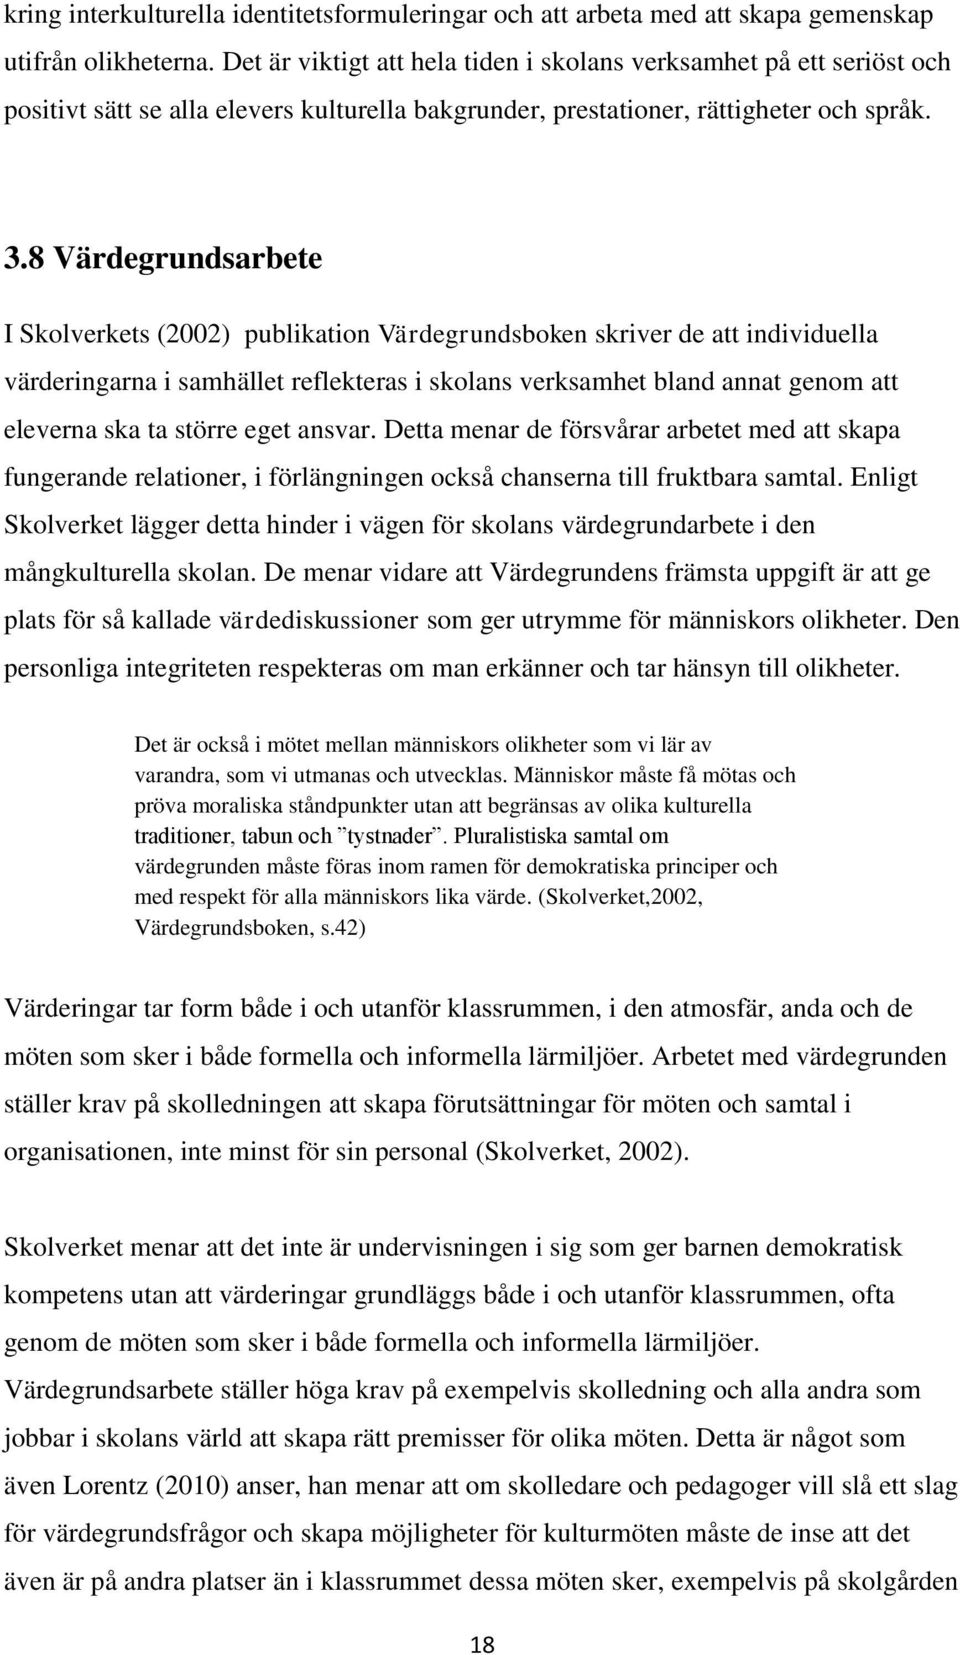 8 Värdegrundsarbete I Skolverkets (2002) publikation Värdegrundsboken skriver de att individuella värderingarna i samhället reflekteras i skolans verksamhet bland annat genom att eleverna ska ta